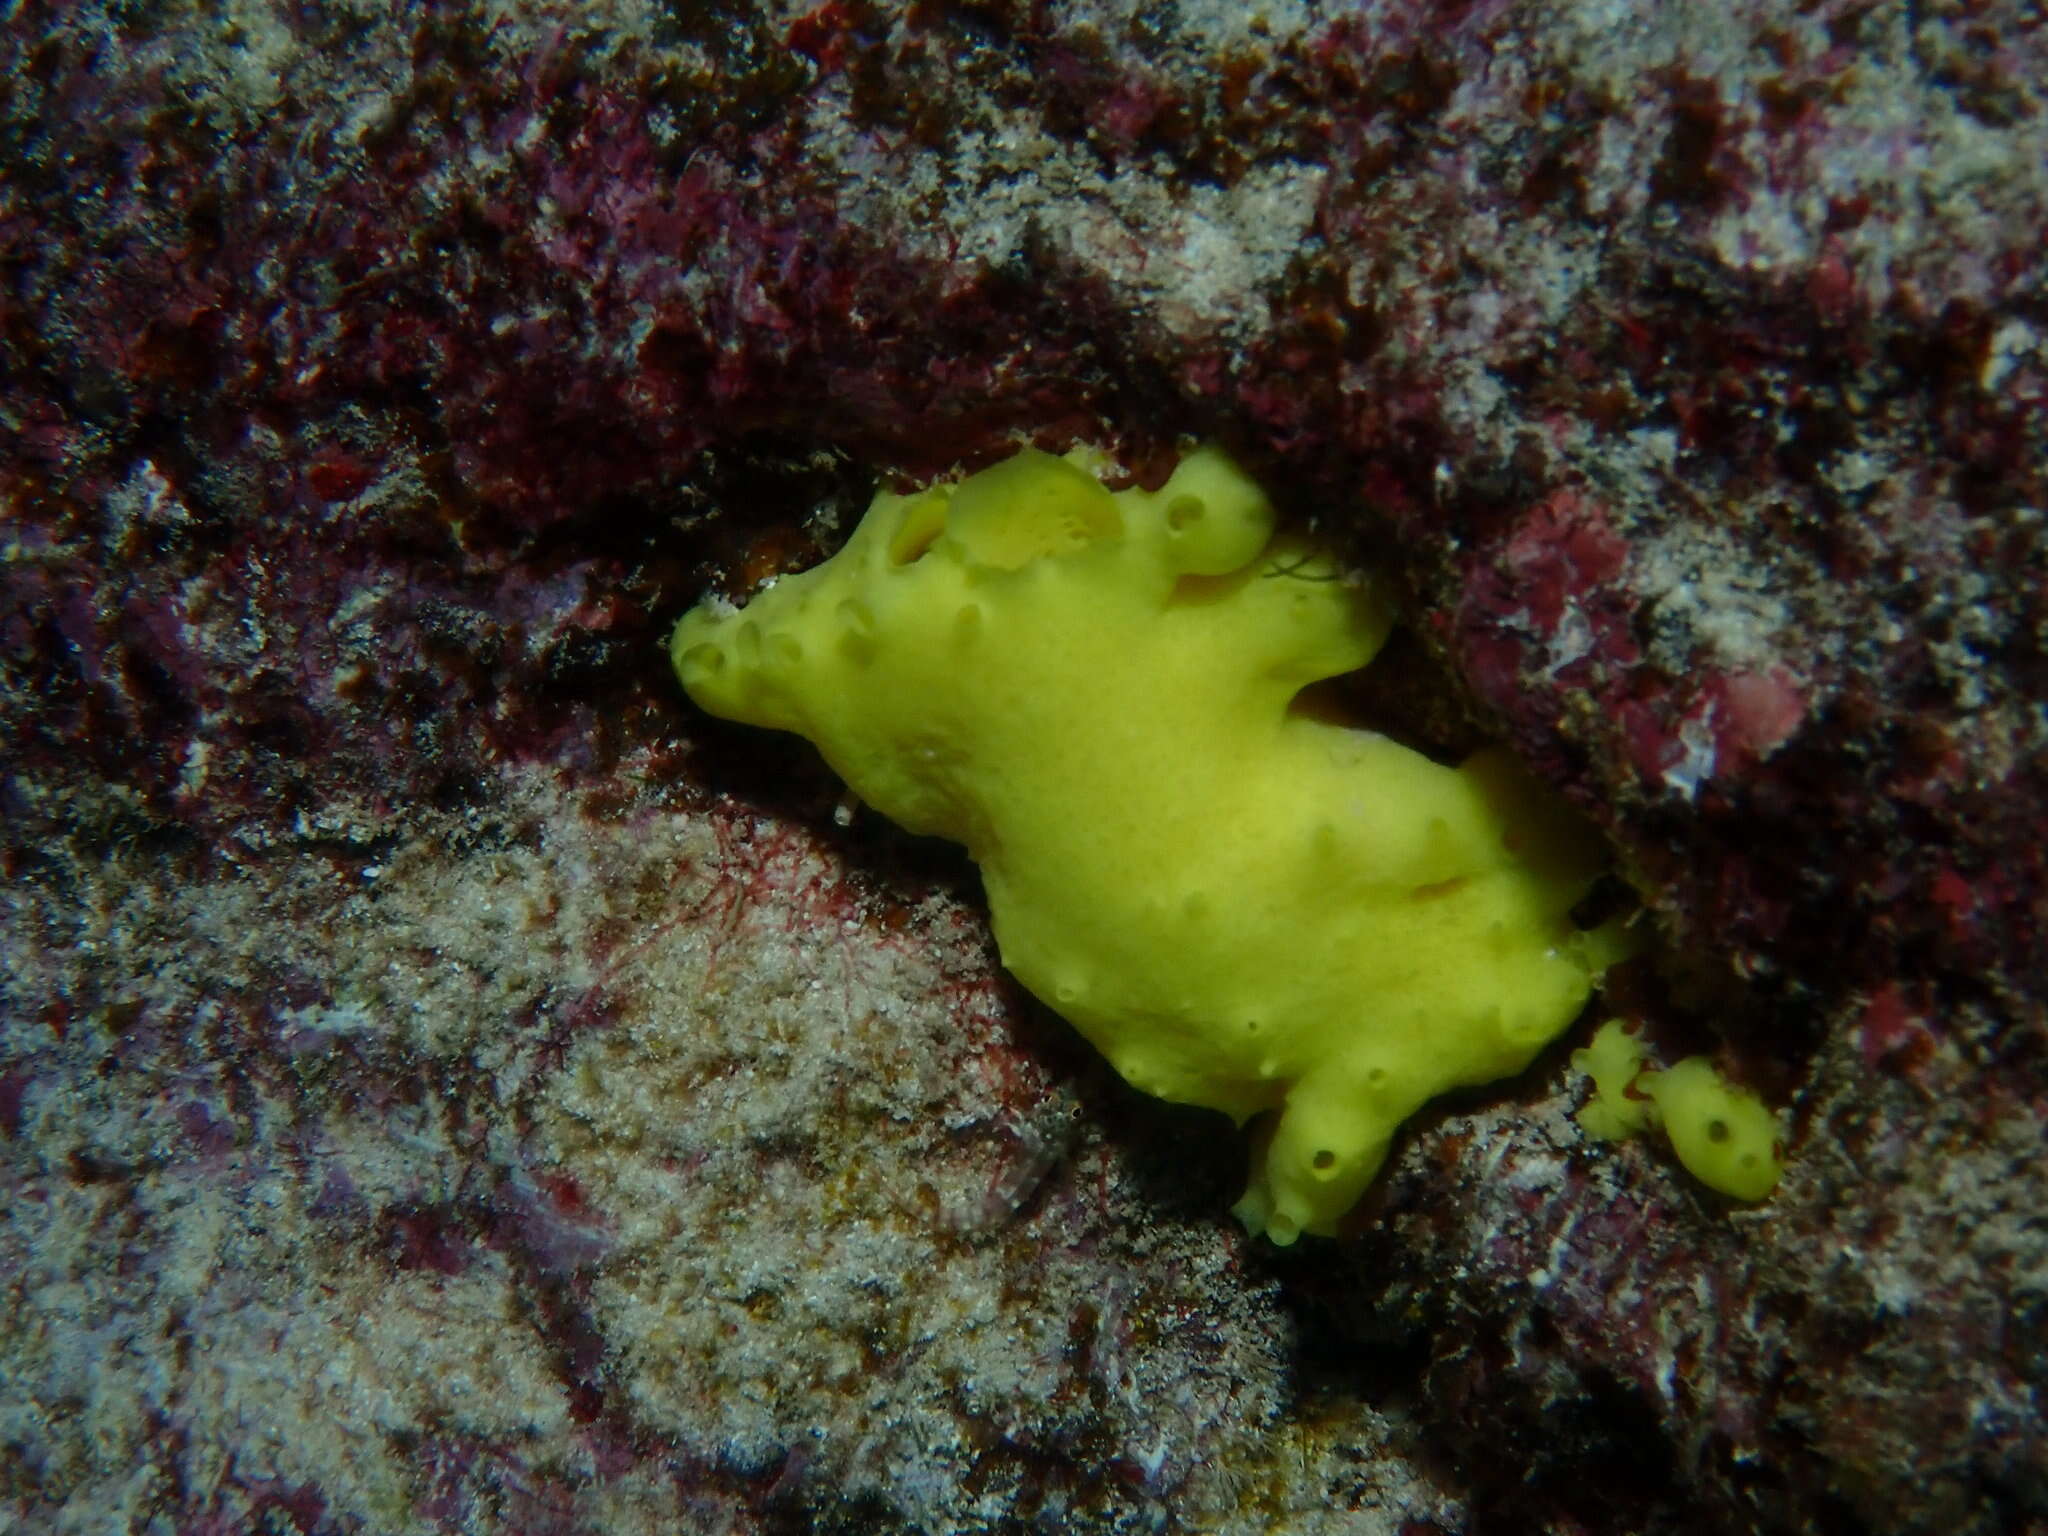 Image of lemon sponge